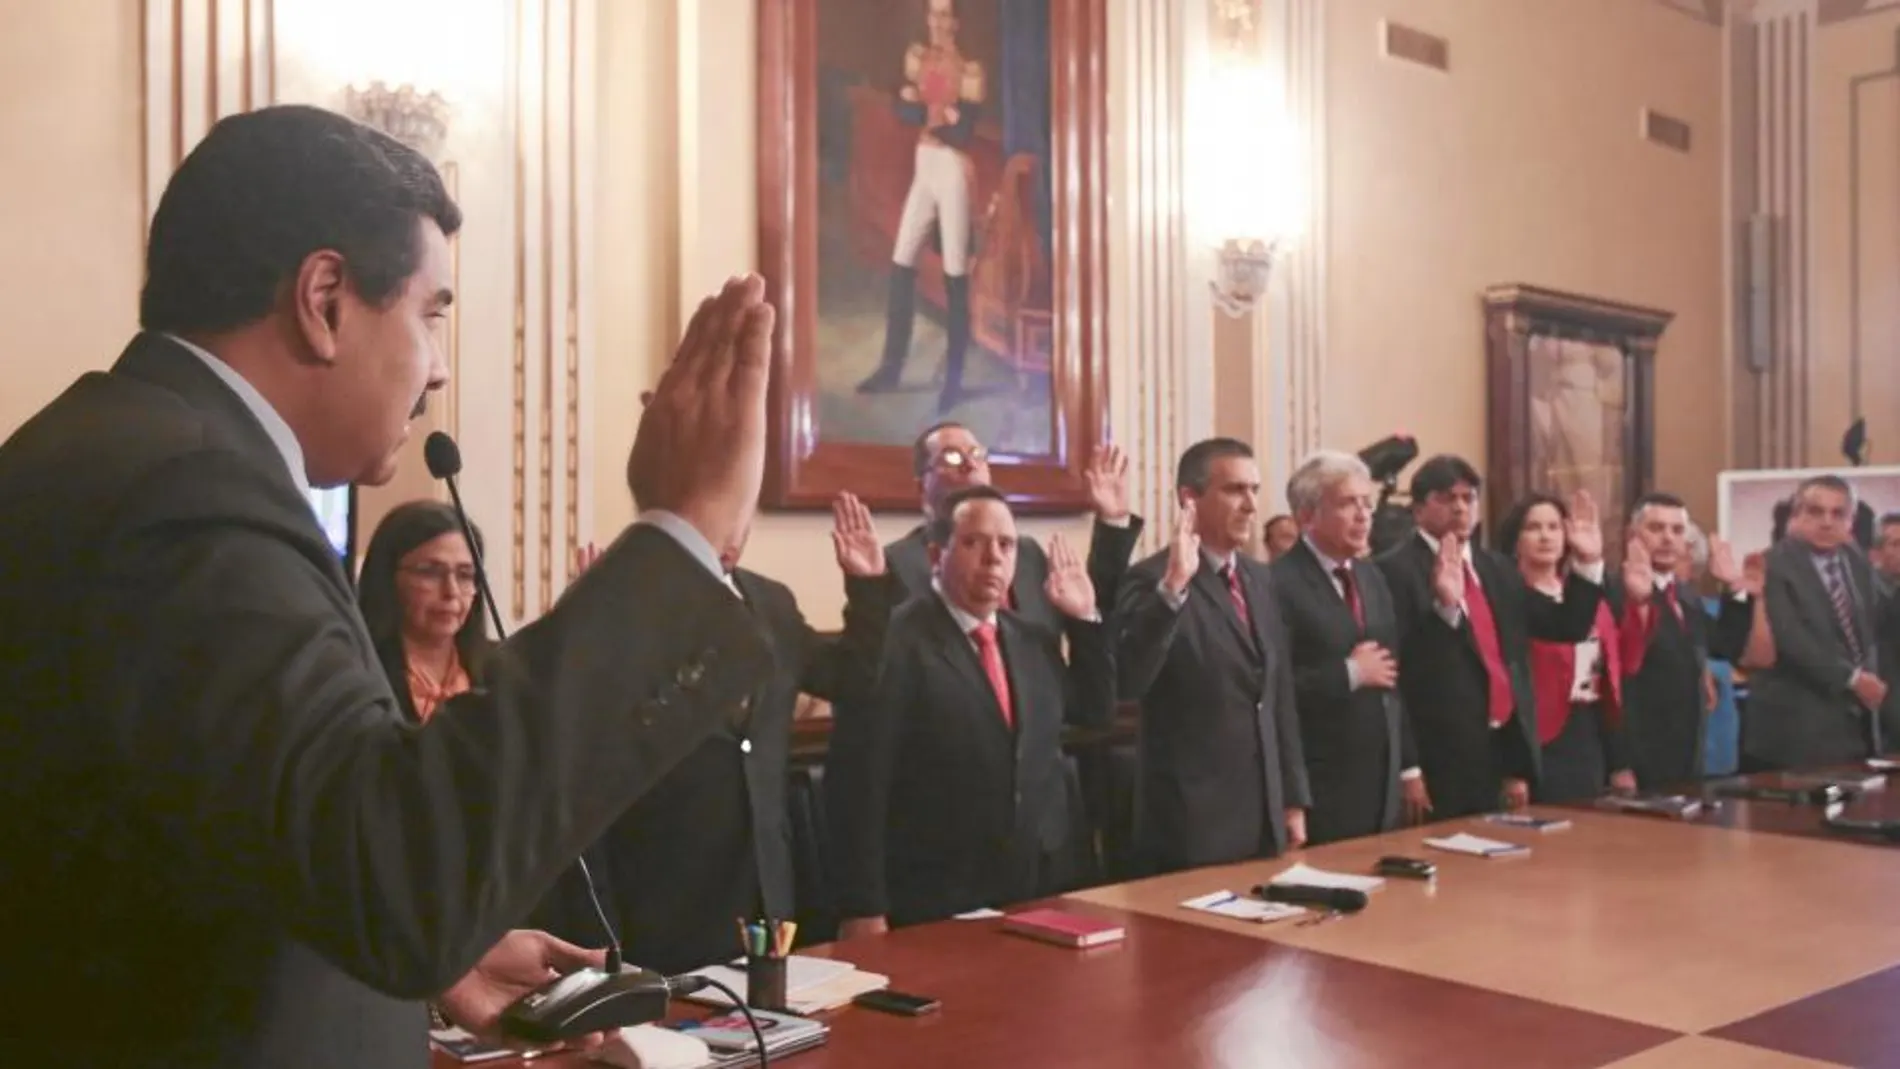 El presidente venezolano toma juramento a los ministros de su nuevo Gobierno con el que ha afianzado la ortodoxia del Socialismo del siglo XXI